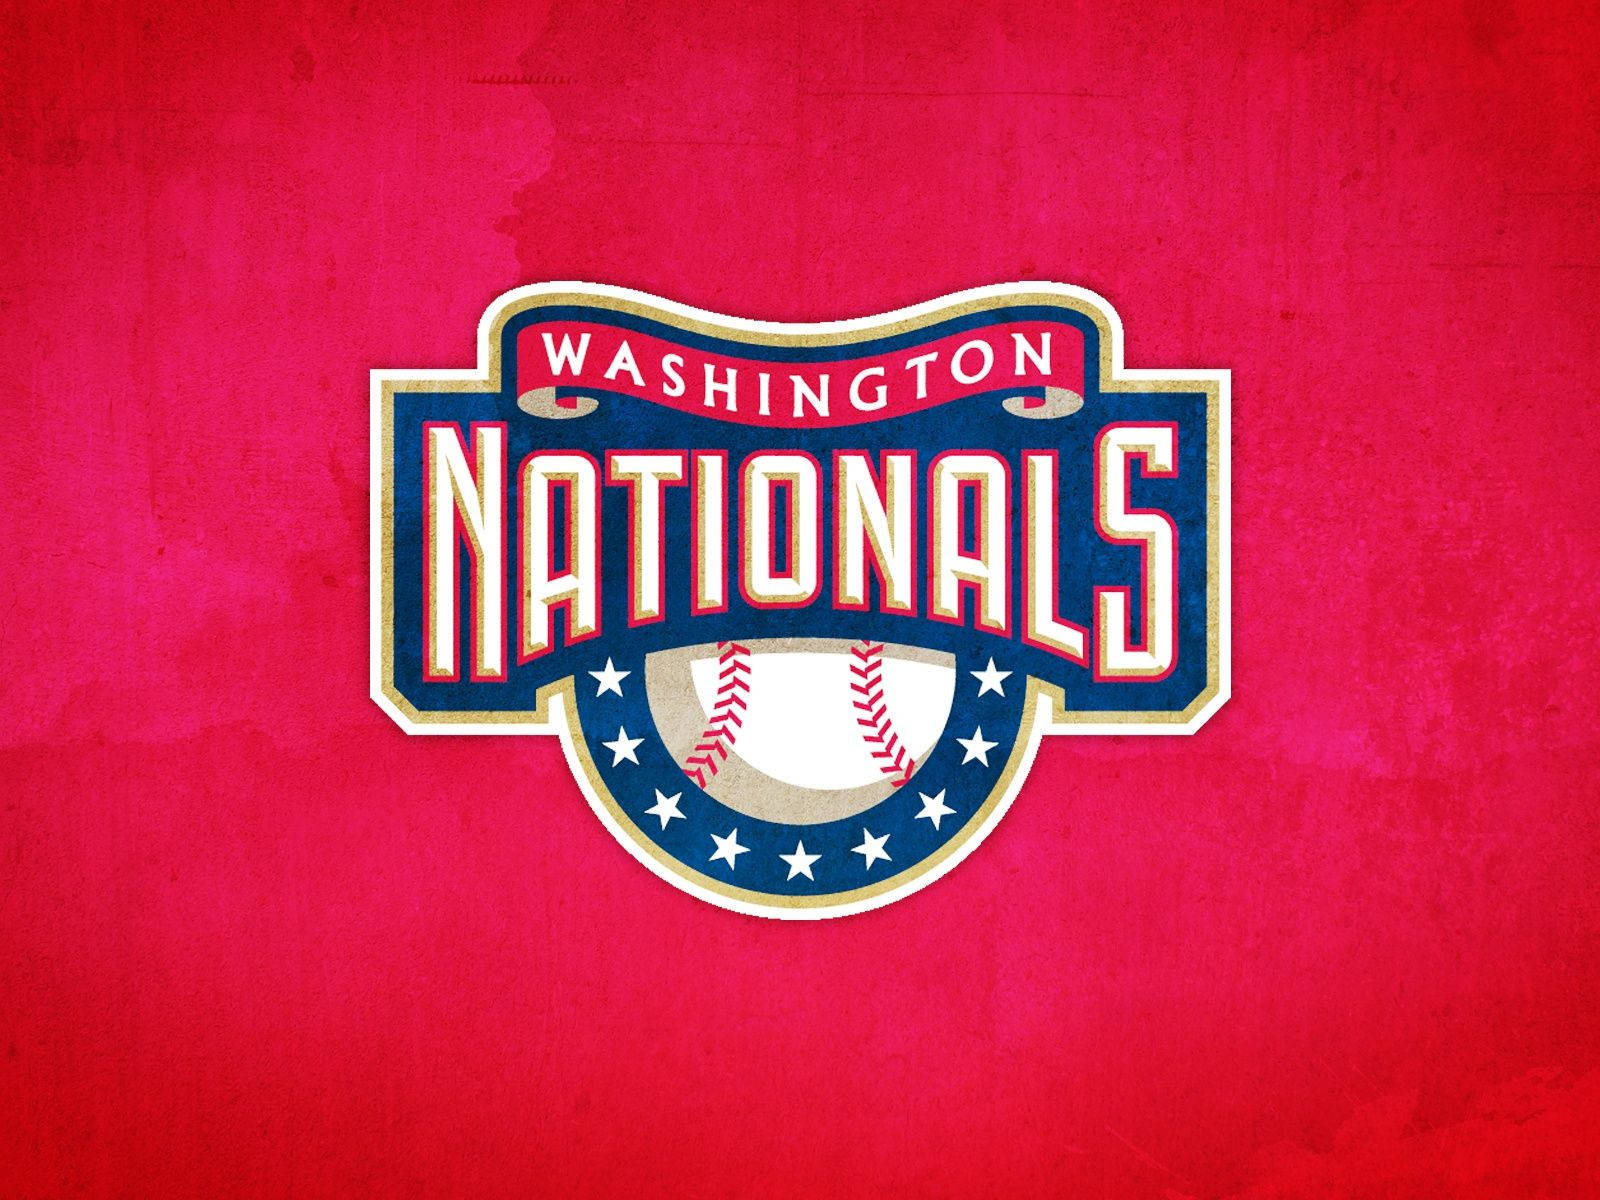 Washington Nationals Vintage Logo Background